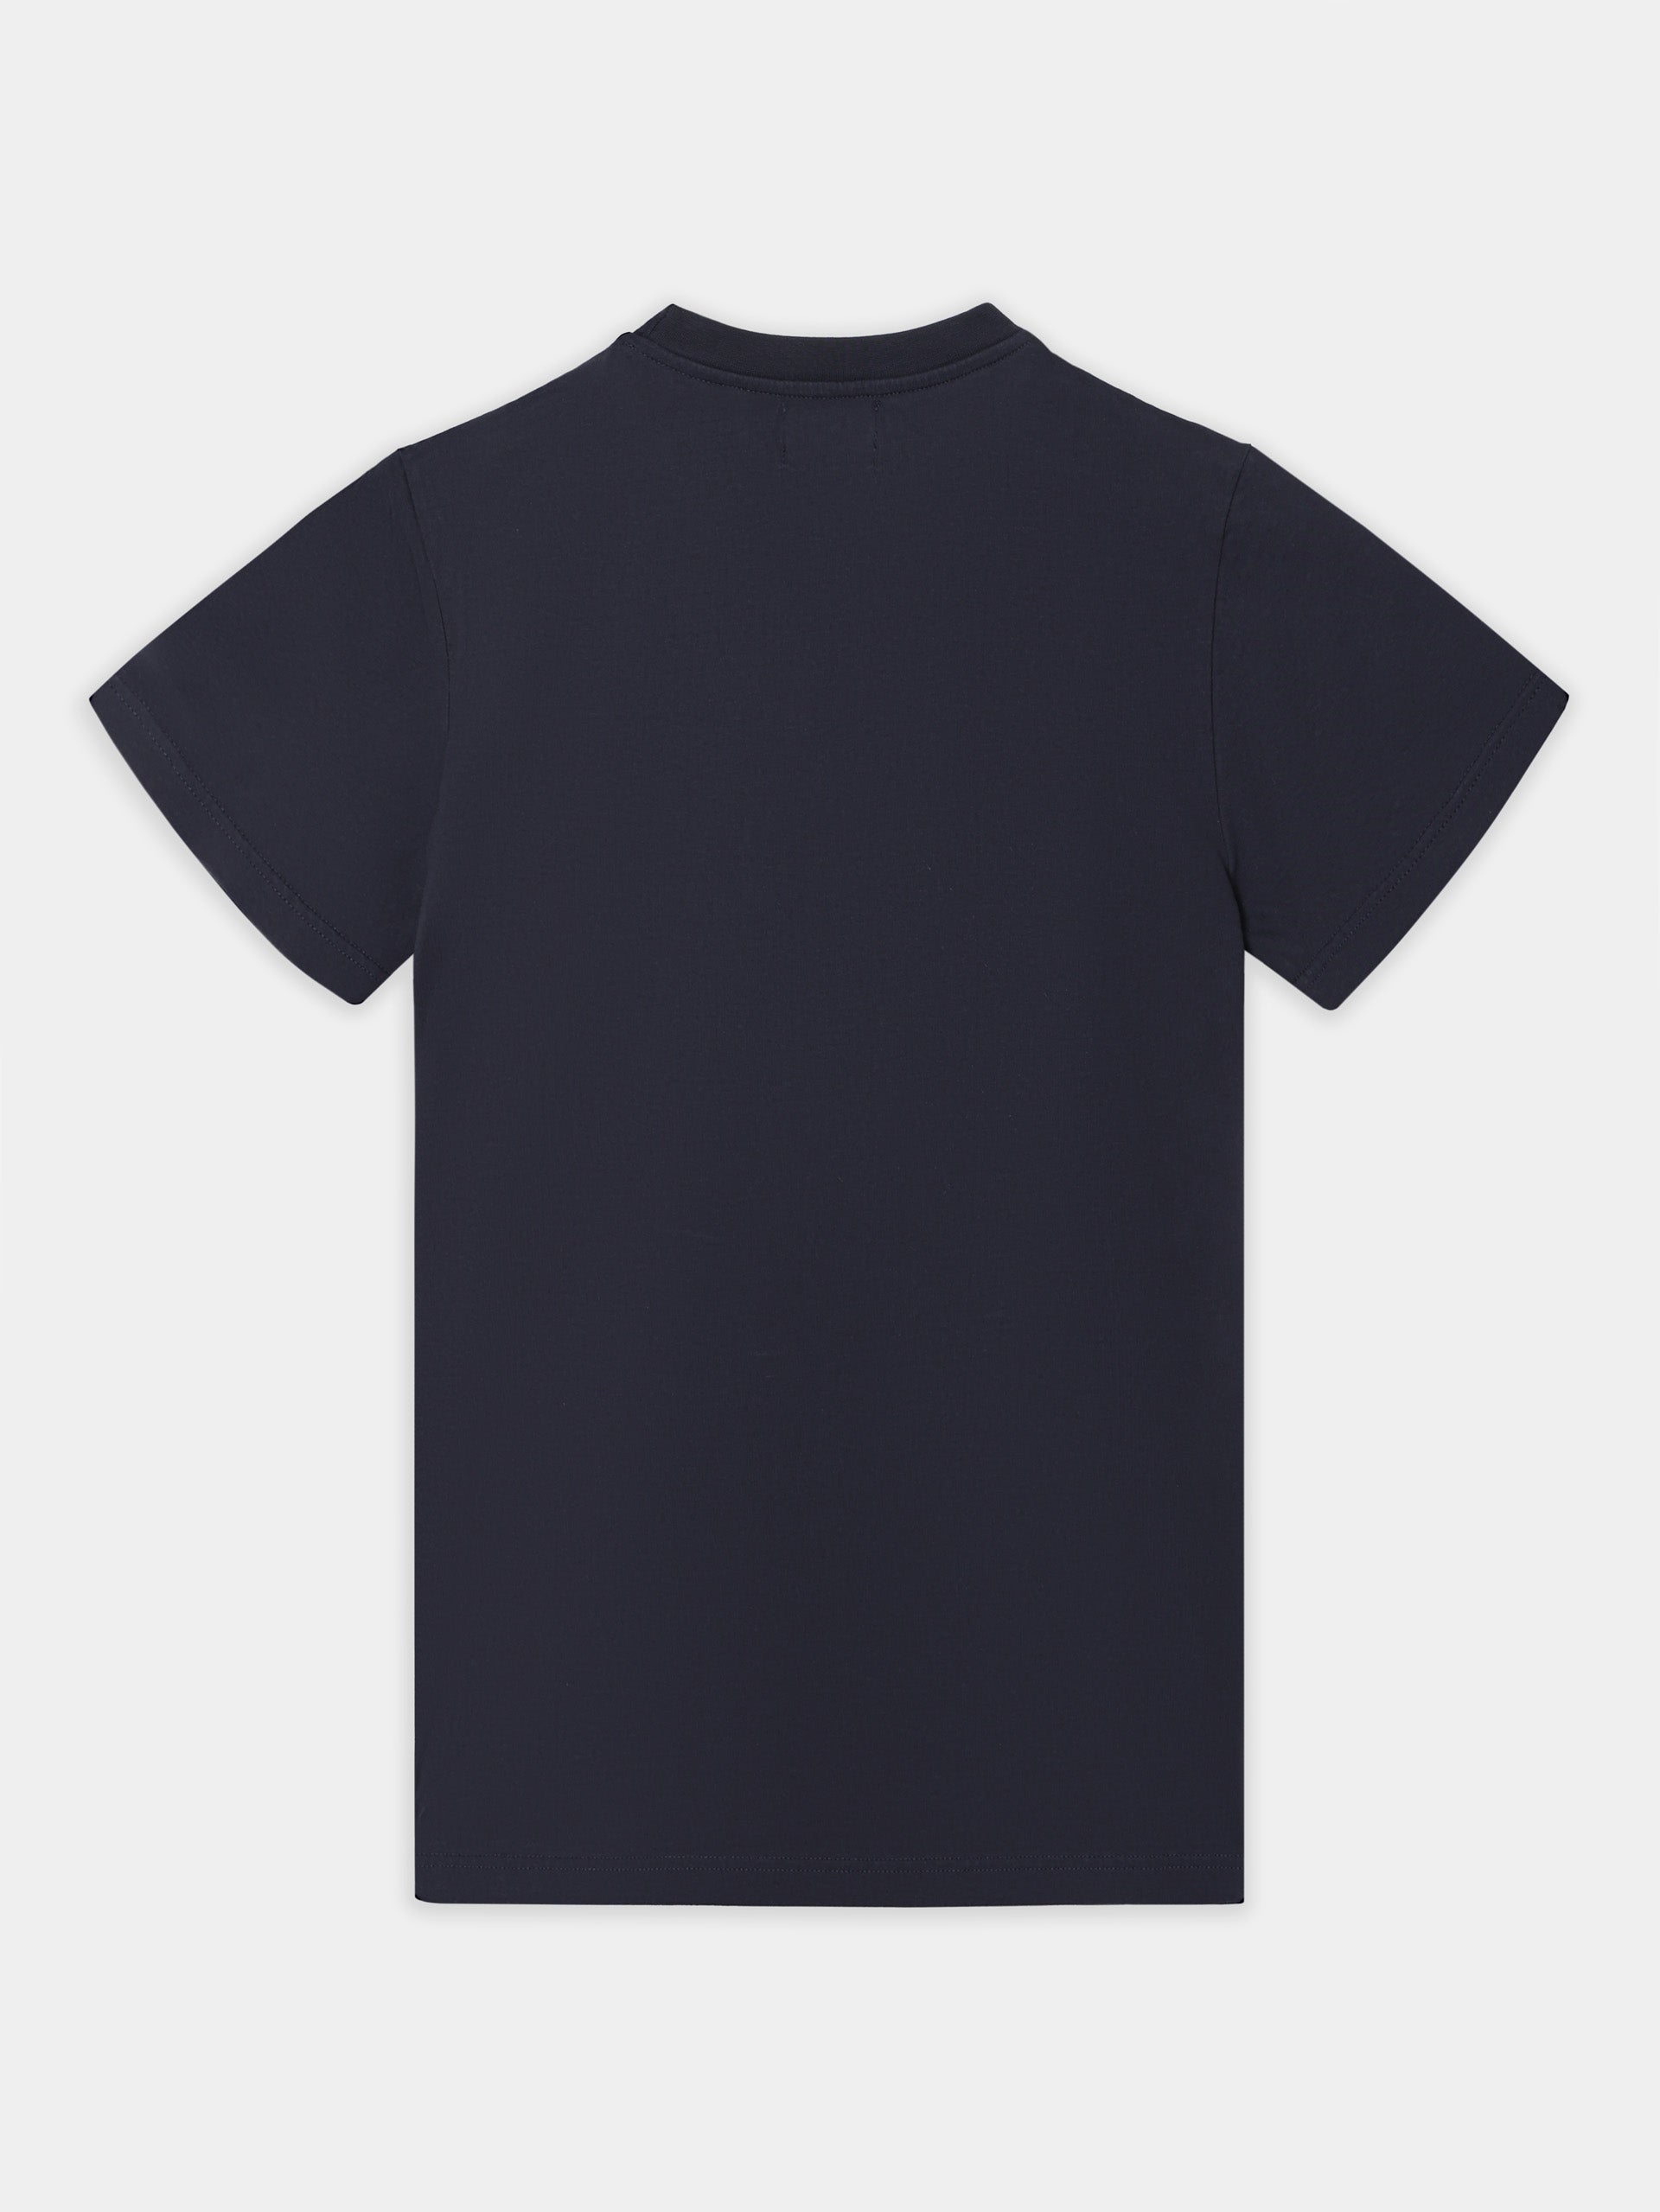 Camiseta unique slim azul marino